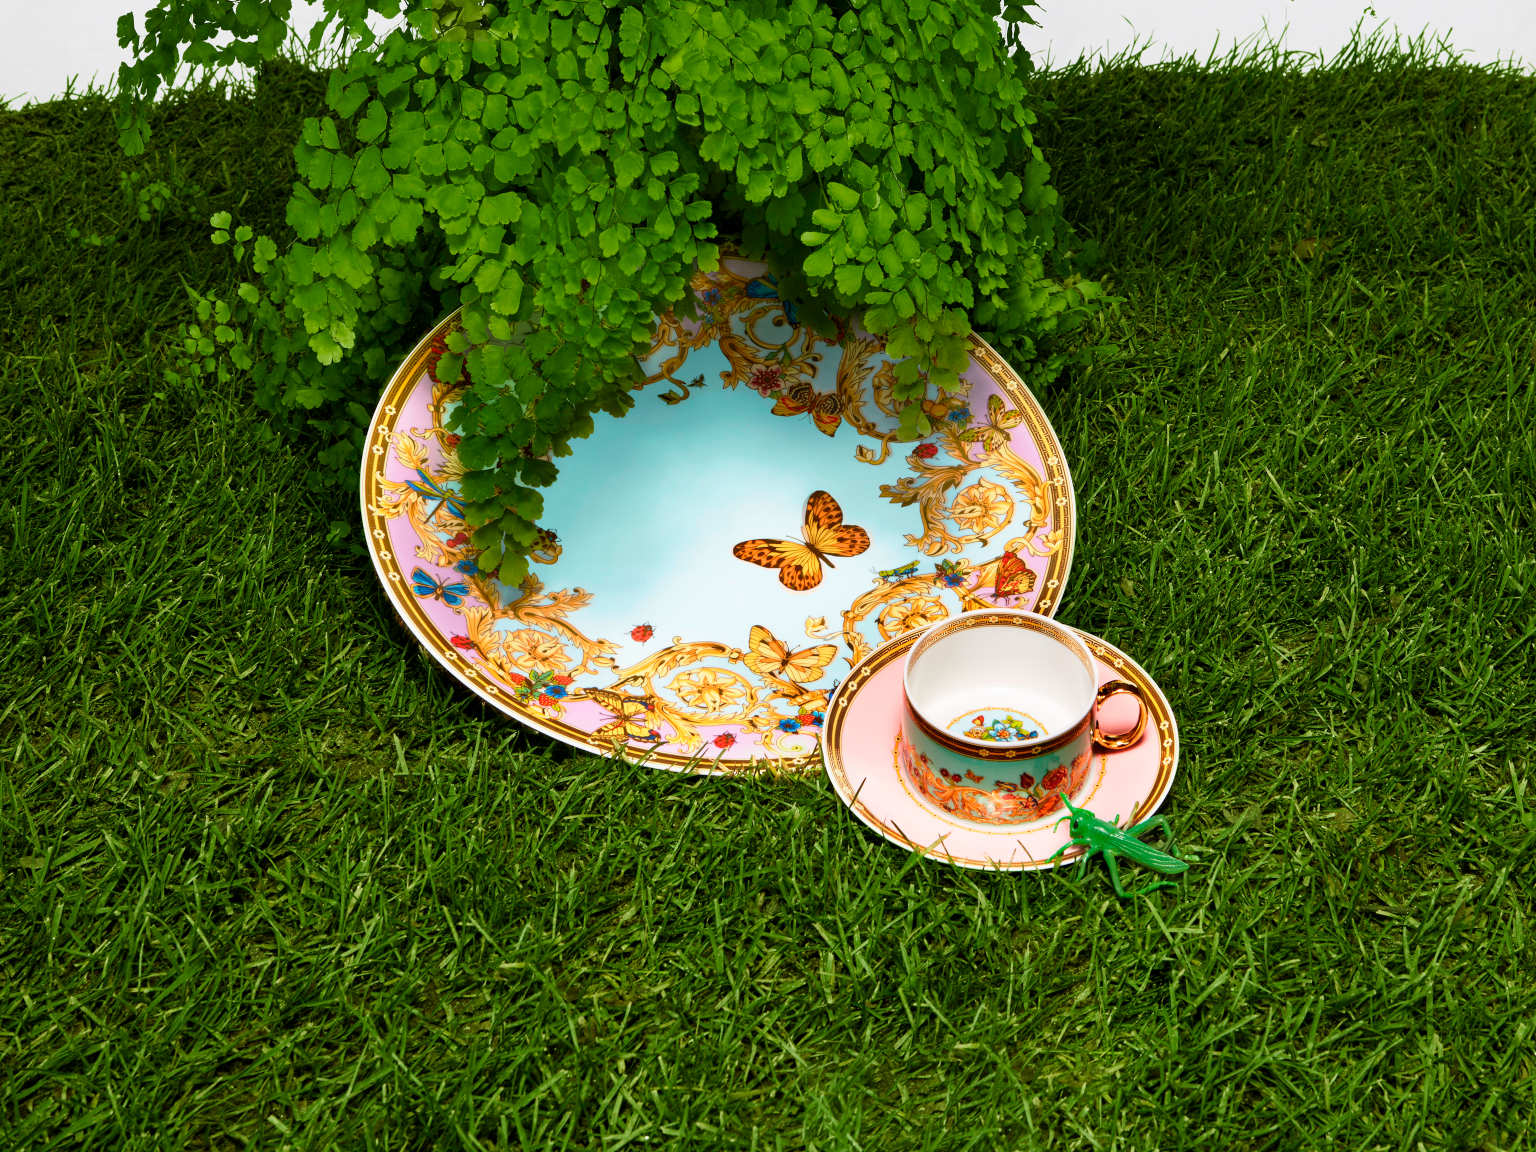 Versace Butterfly Garden plate & tea cup with saucer put on green grass